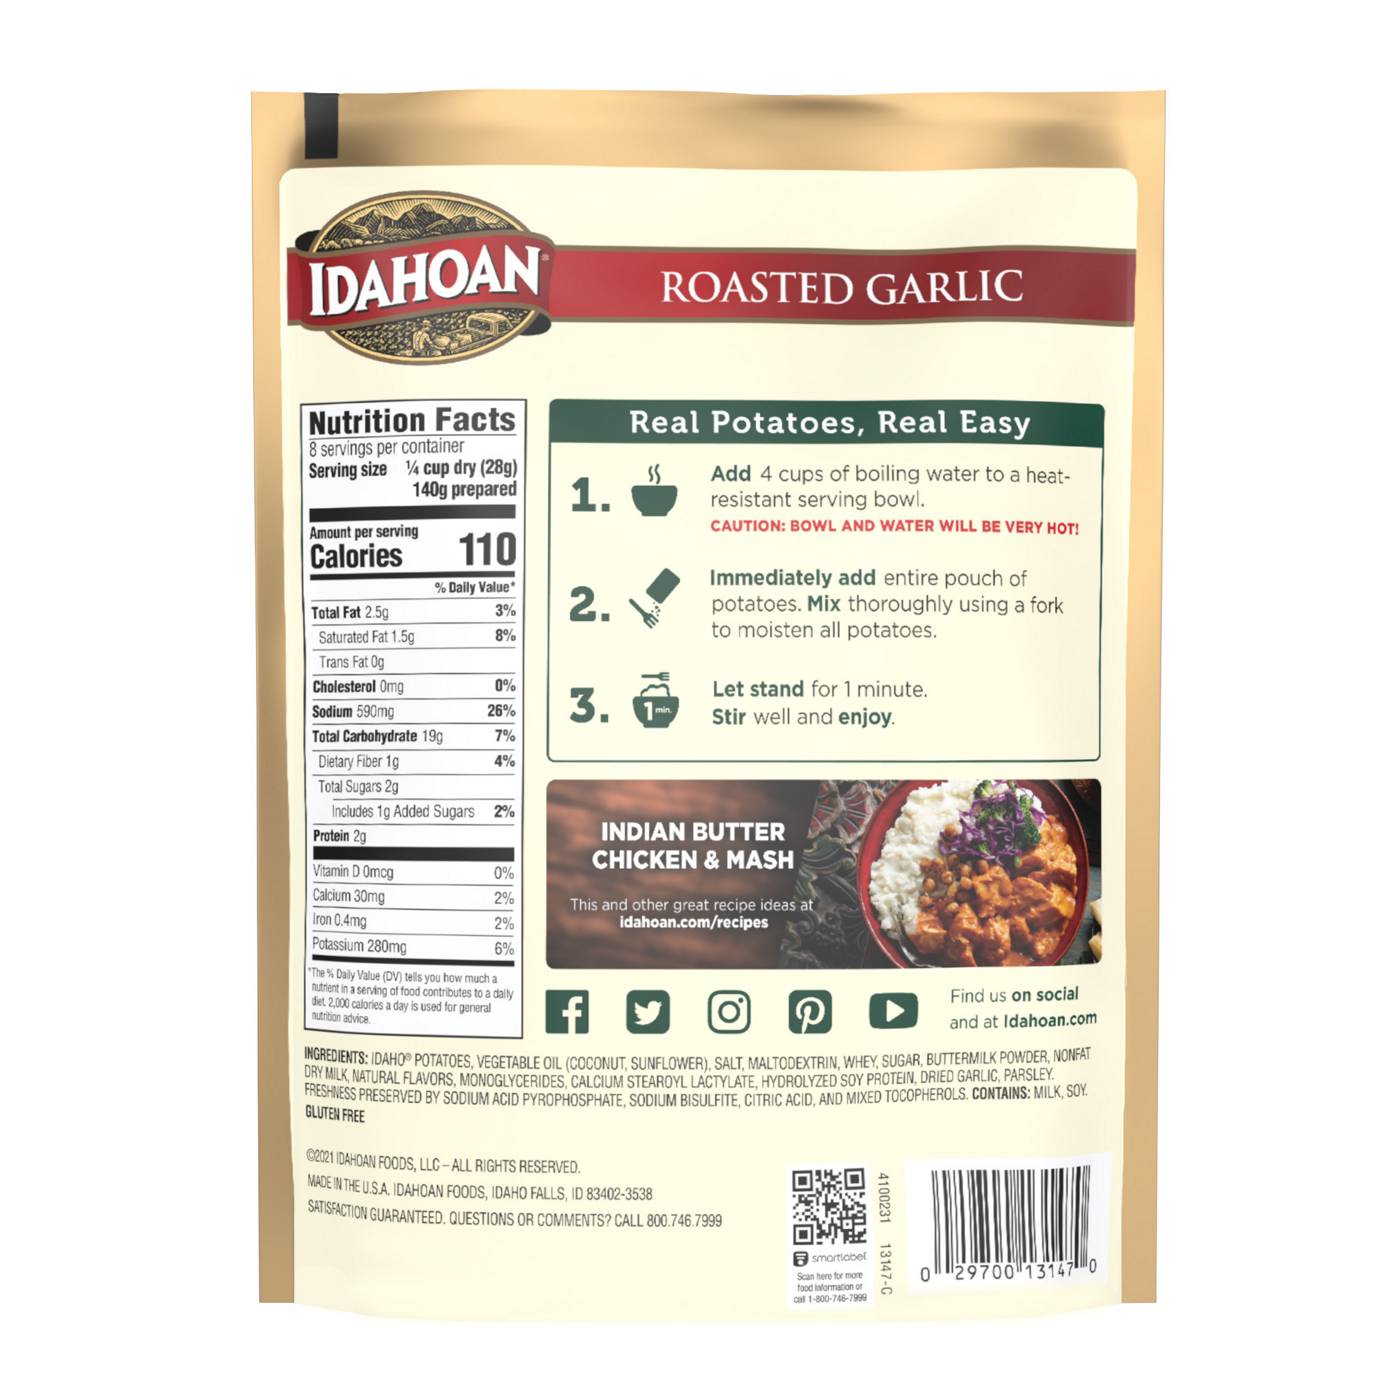 Idahoan Family Size Roasted Garlic Mashed Potatoes - Shop Pantry Meals at  H-E-B